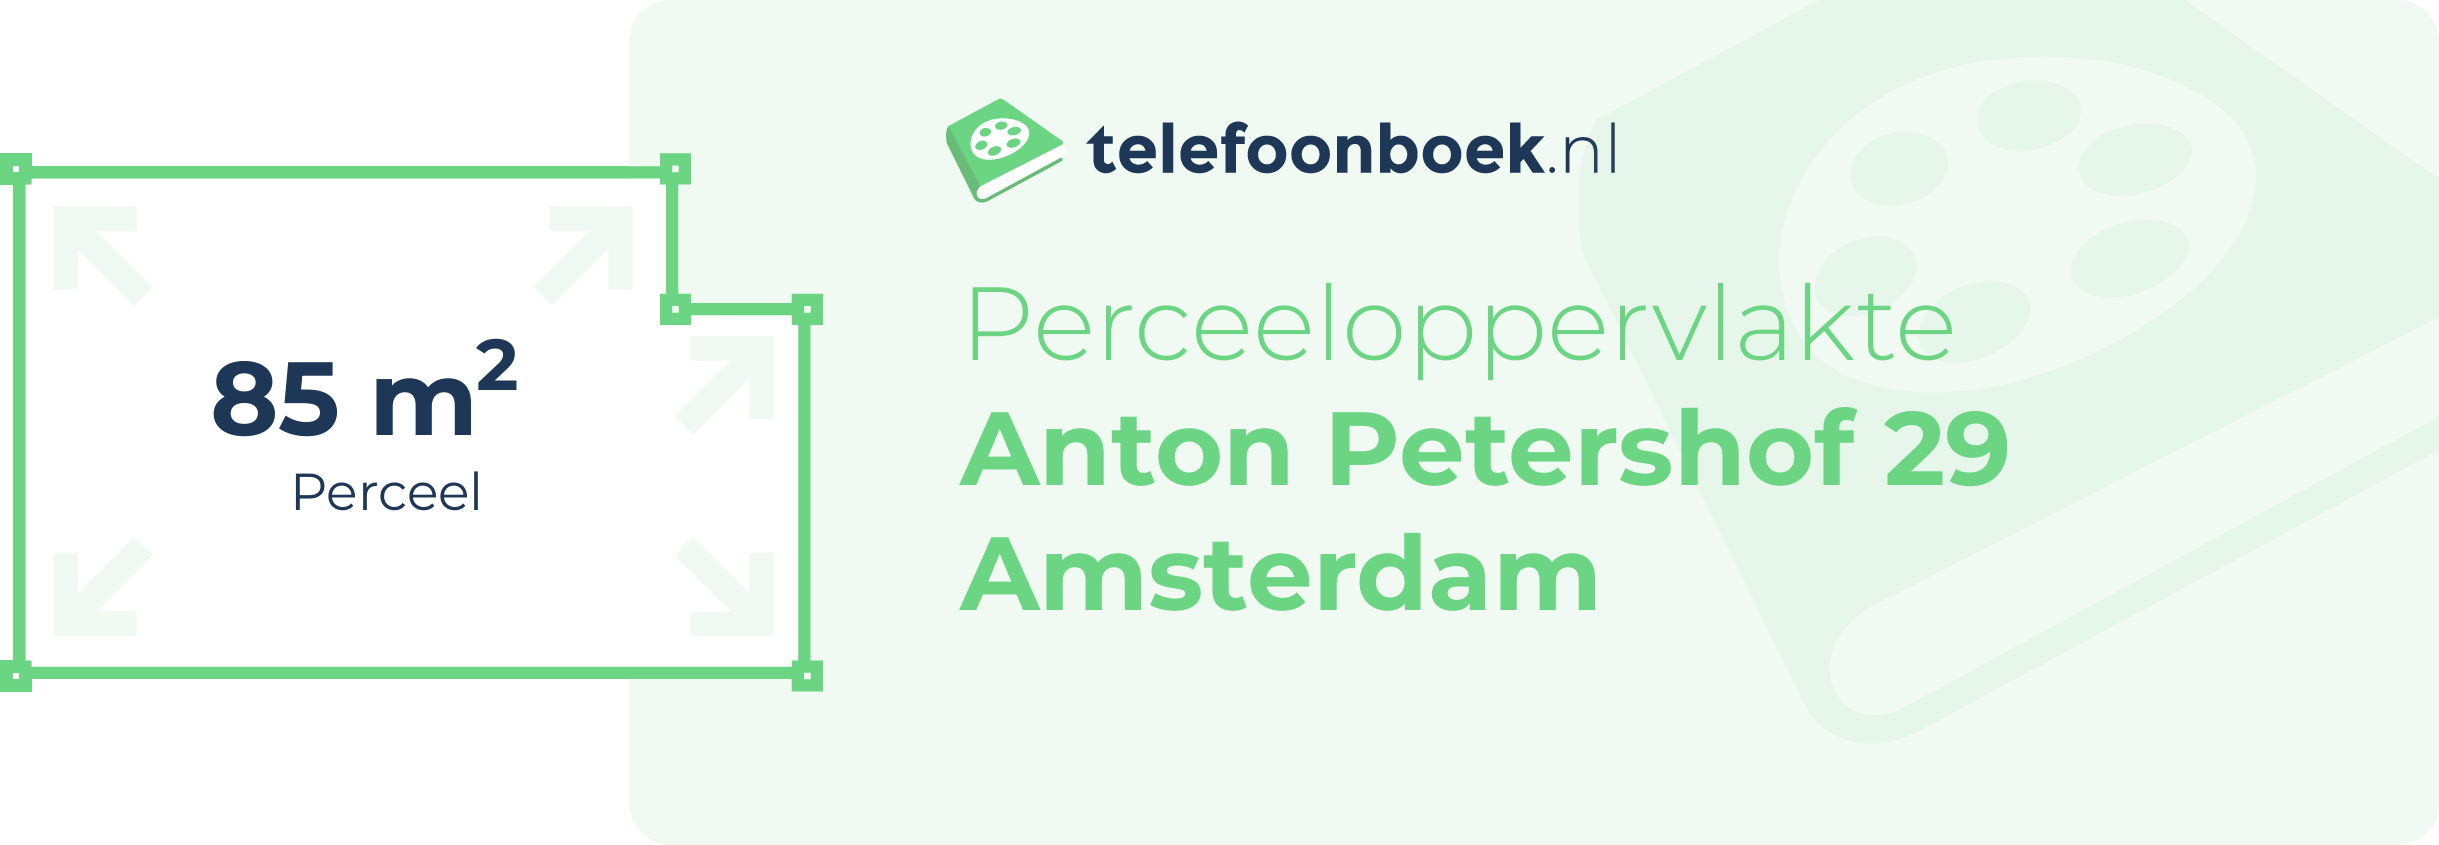 Perceeloppervlakte Anton Petershof 29 Amsterdam